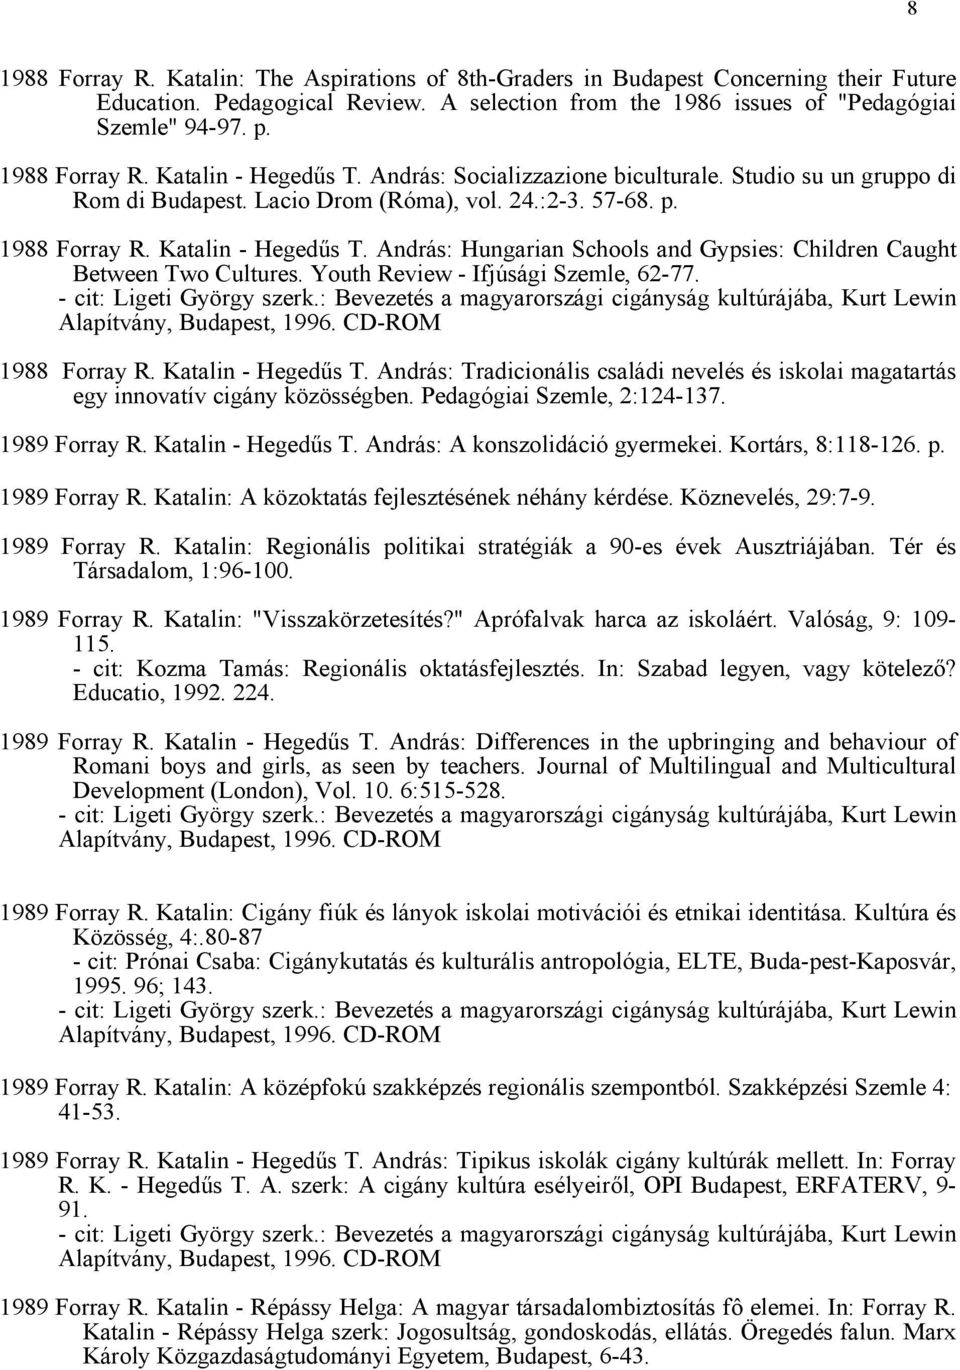 1987 Forray R. Katalin - Kozma Tamás szerk.: Az oktatás fejlesztése Komárom  megyében. Oktatáskutató Intézet, Budapest. 528 p. - PDF Ingyenes letöltés